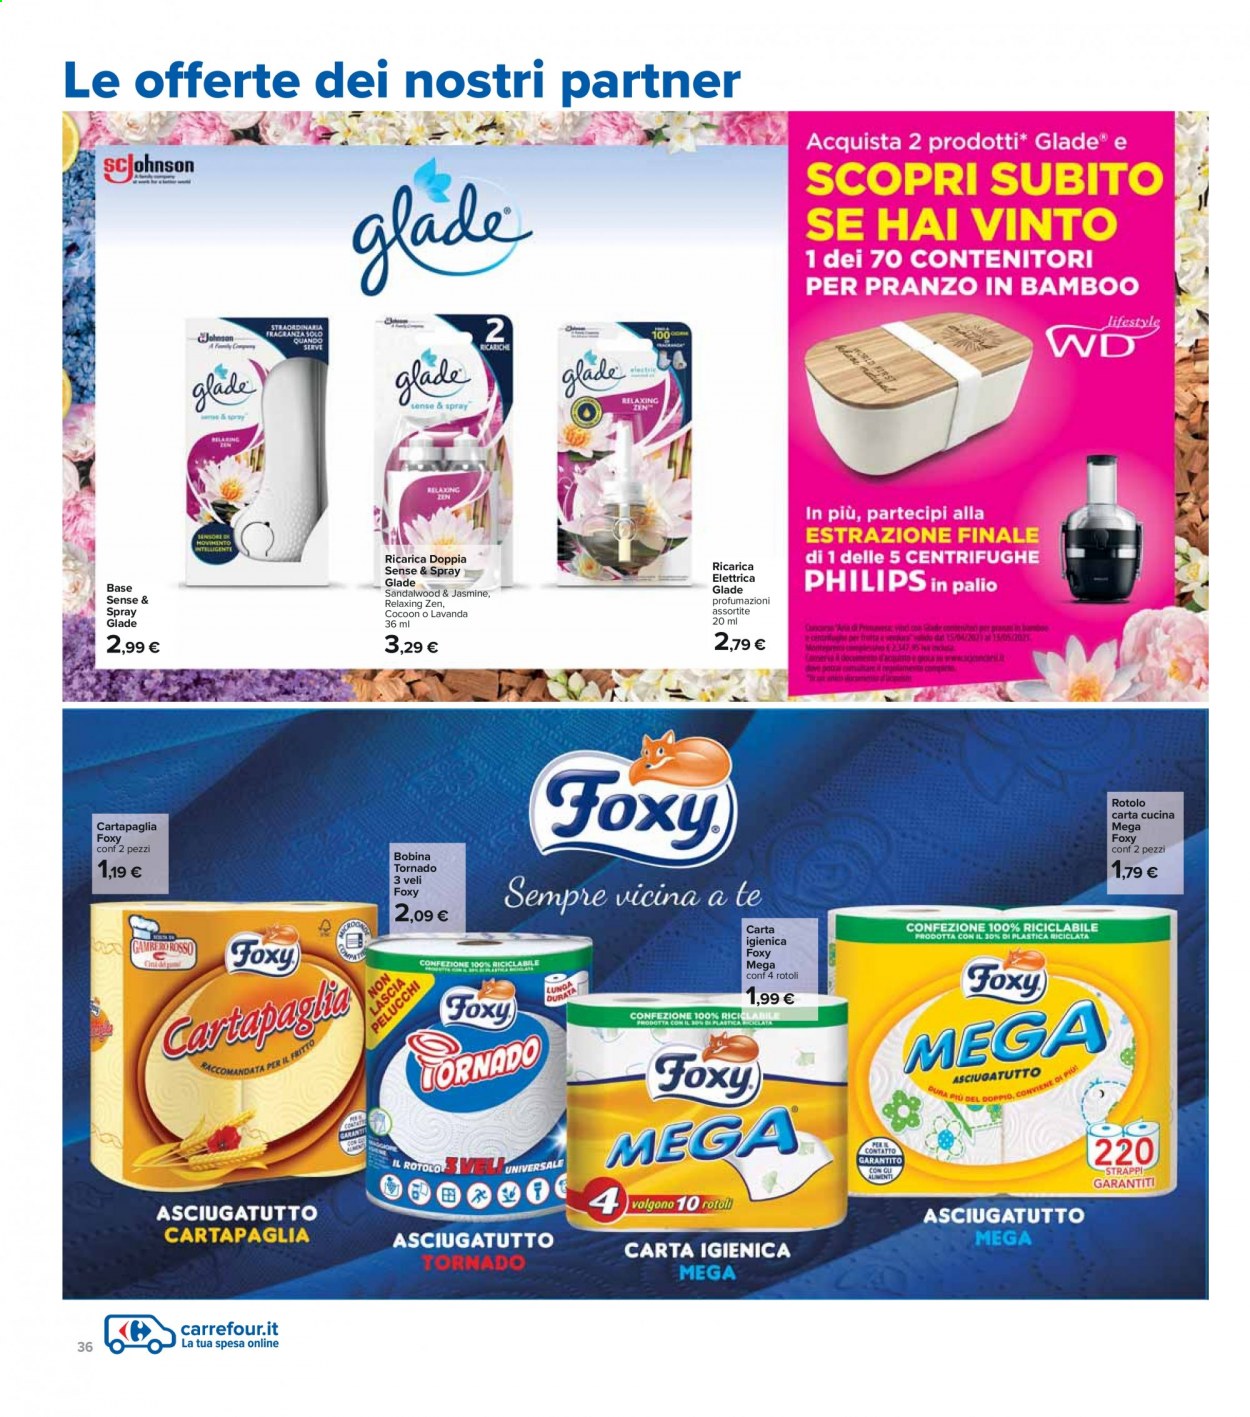 Volantino Carrefour - 22/4/2021 - 5/5/2021 - Prodotti in offerta - Philips, carta cucina, carta igienica, Foxy, bobina. Pagina 36.